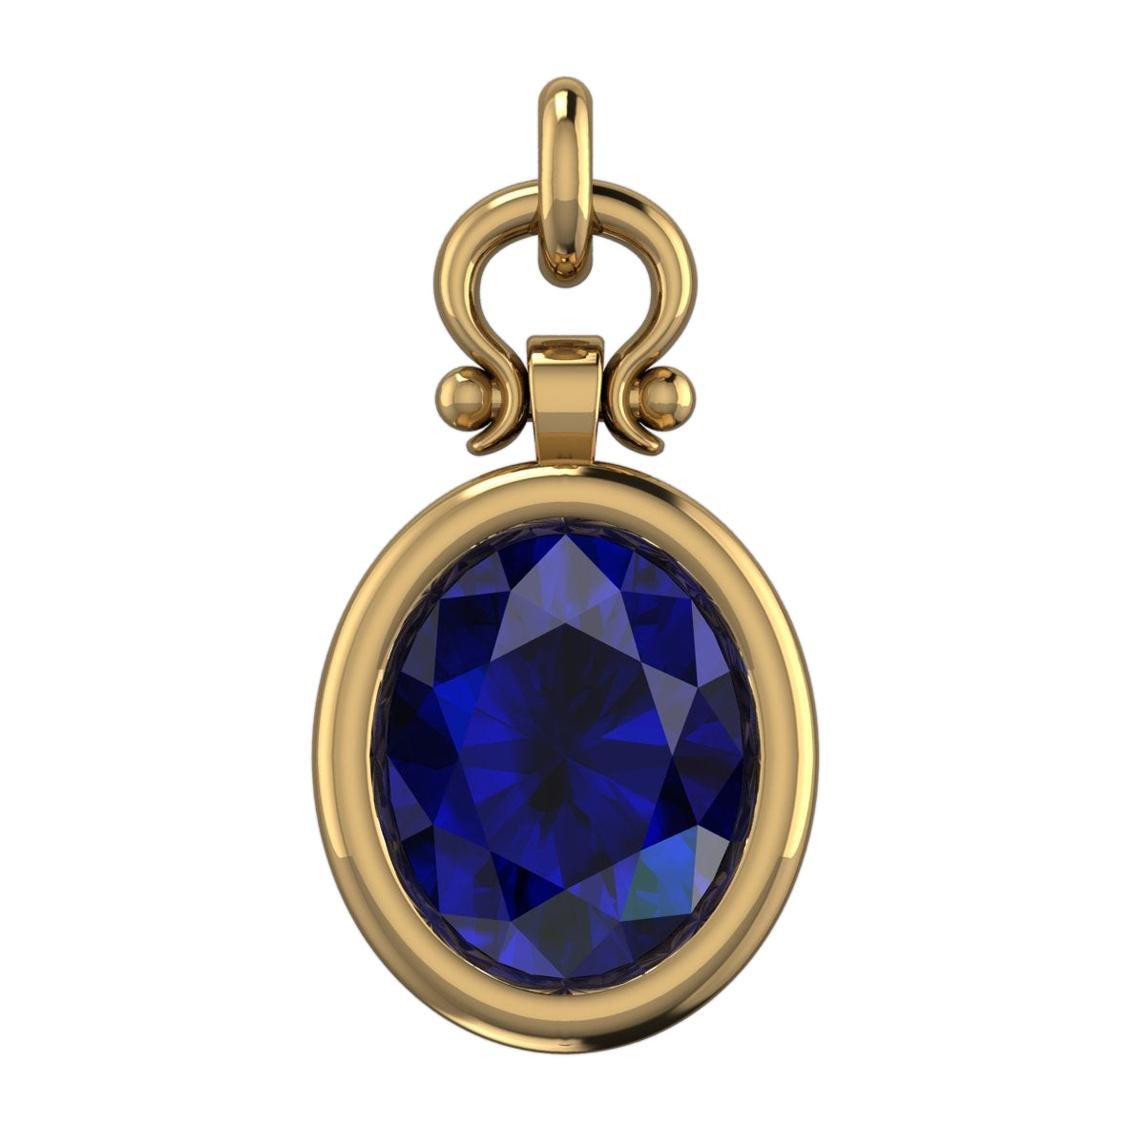 Berberyn Certified 4.66 Carat Oval Blue Sapphire Custom Pendant Necklace in 18k